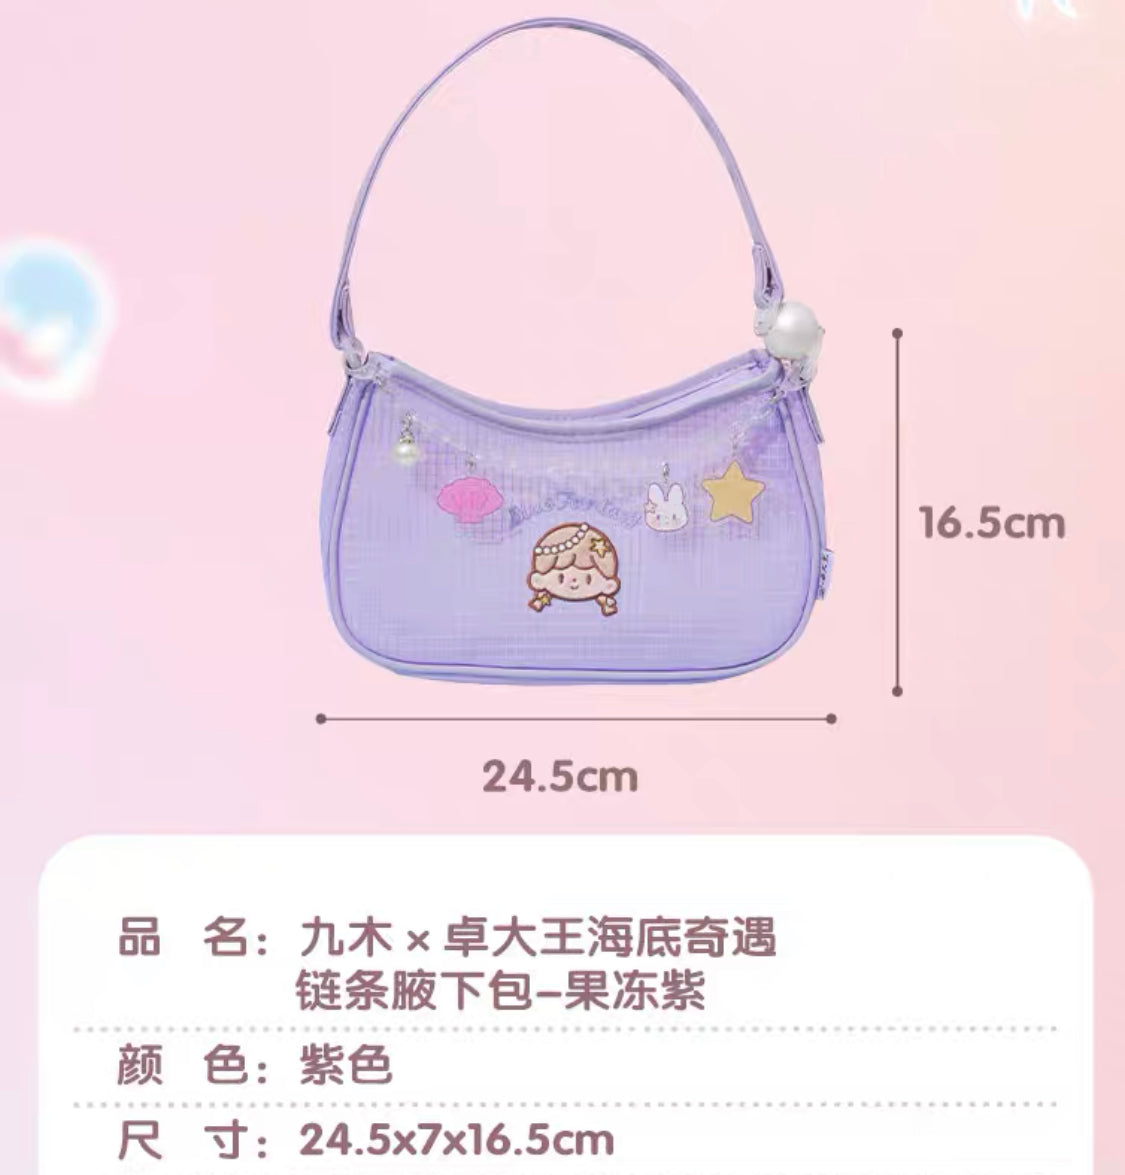 Molinta × M&G shop summer limited blue fantasy series purple shoulder bag